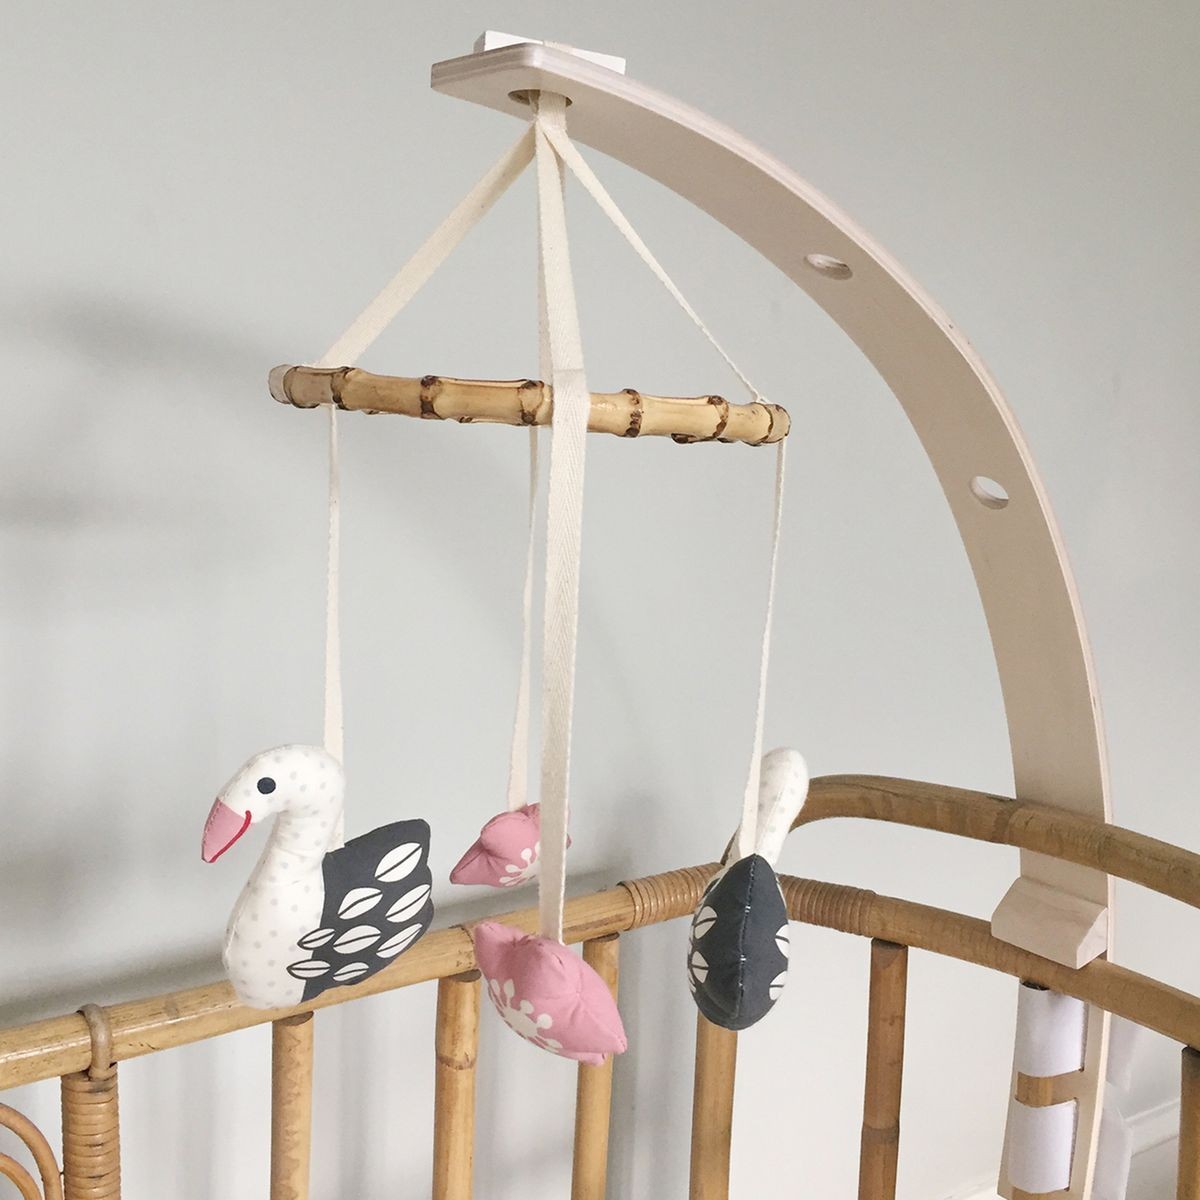 Le mobile bébé : un jouet d'éveil décoratif